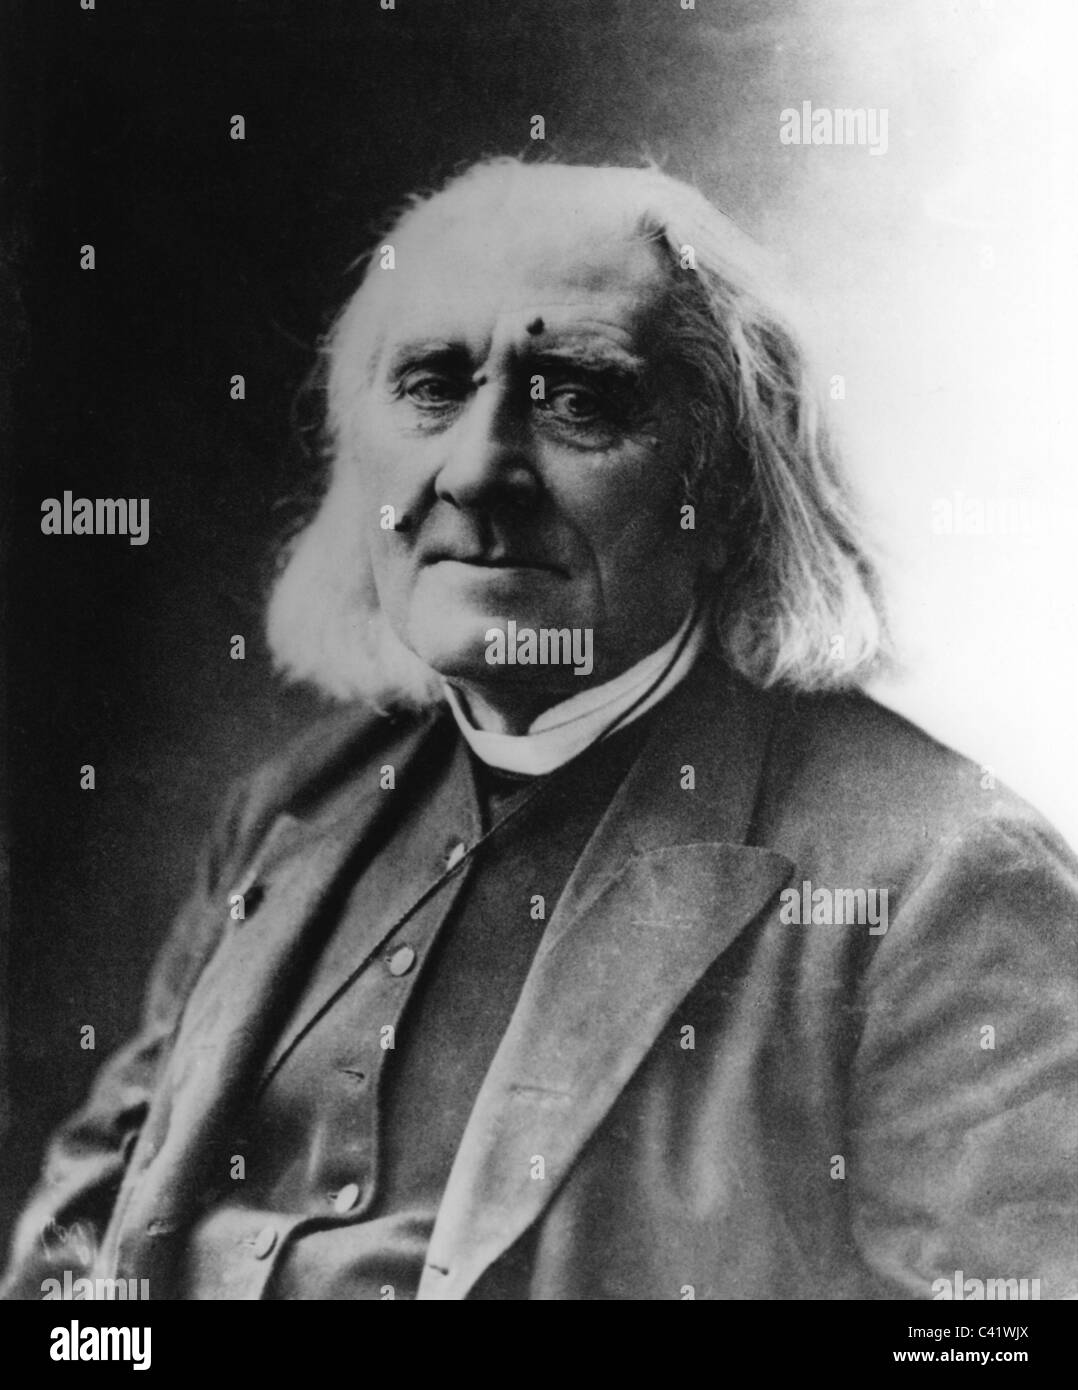 Liszt, Franz, 22.10.1811 - 31.7.1886, compositeur hongrois, portrait, photographie de Nadar, Paris, mars 1886, Banque D'Images